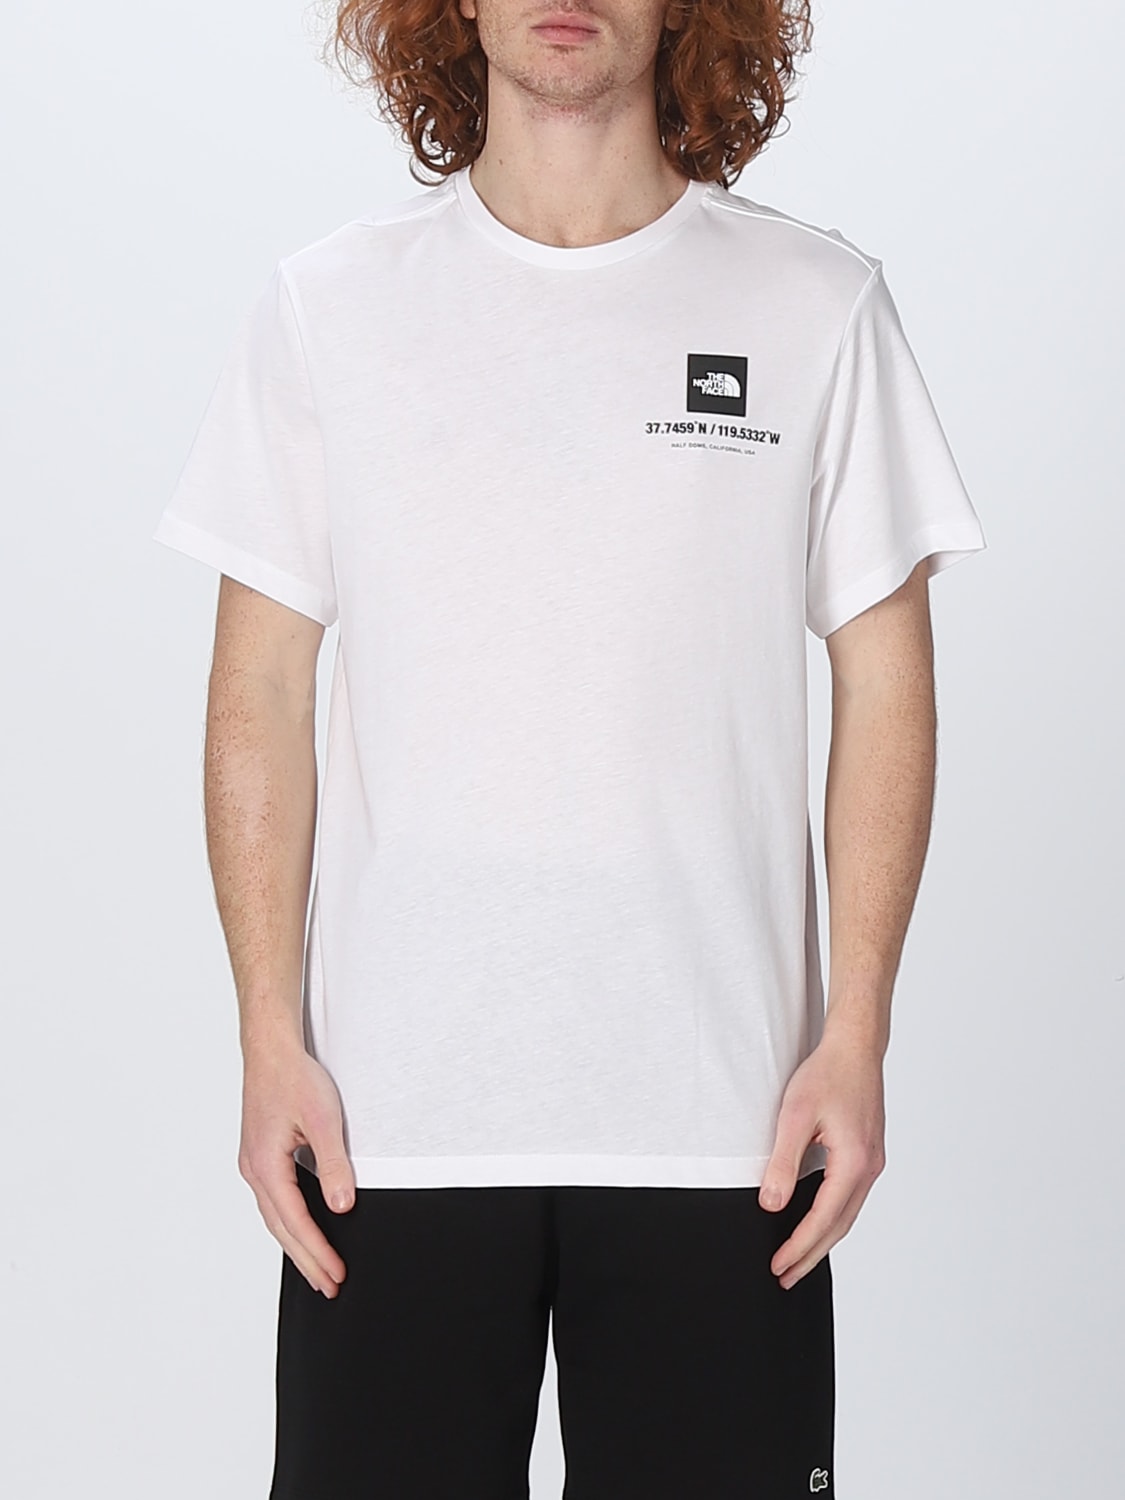 Outlet de The North Face: Camiseta para hombre, Blanco